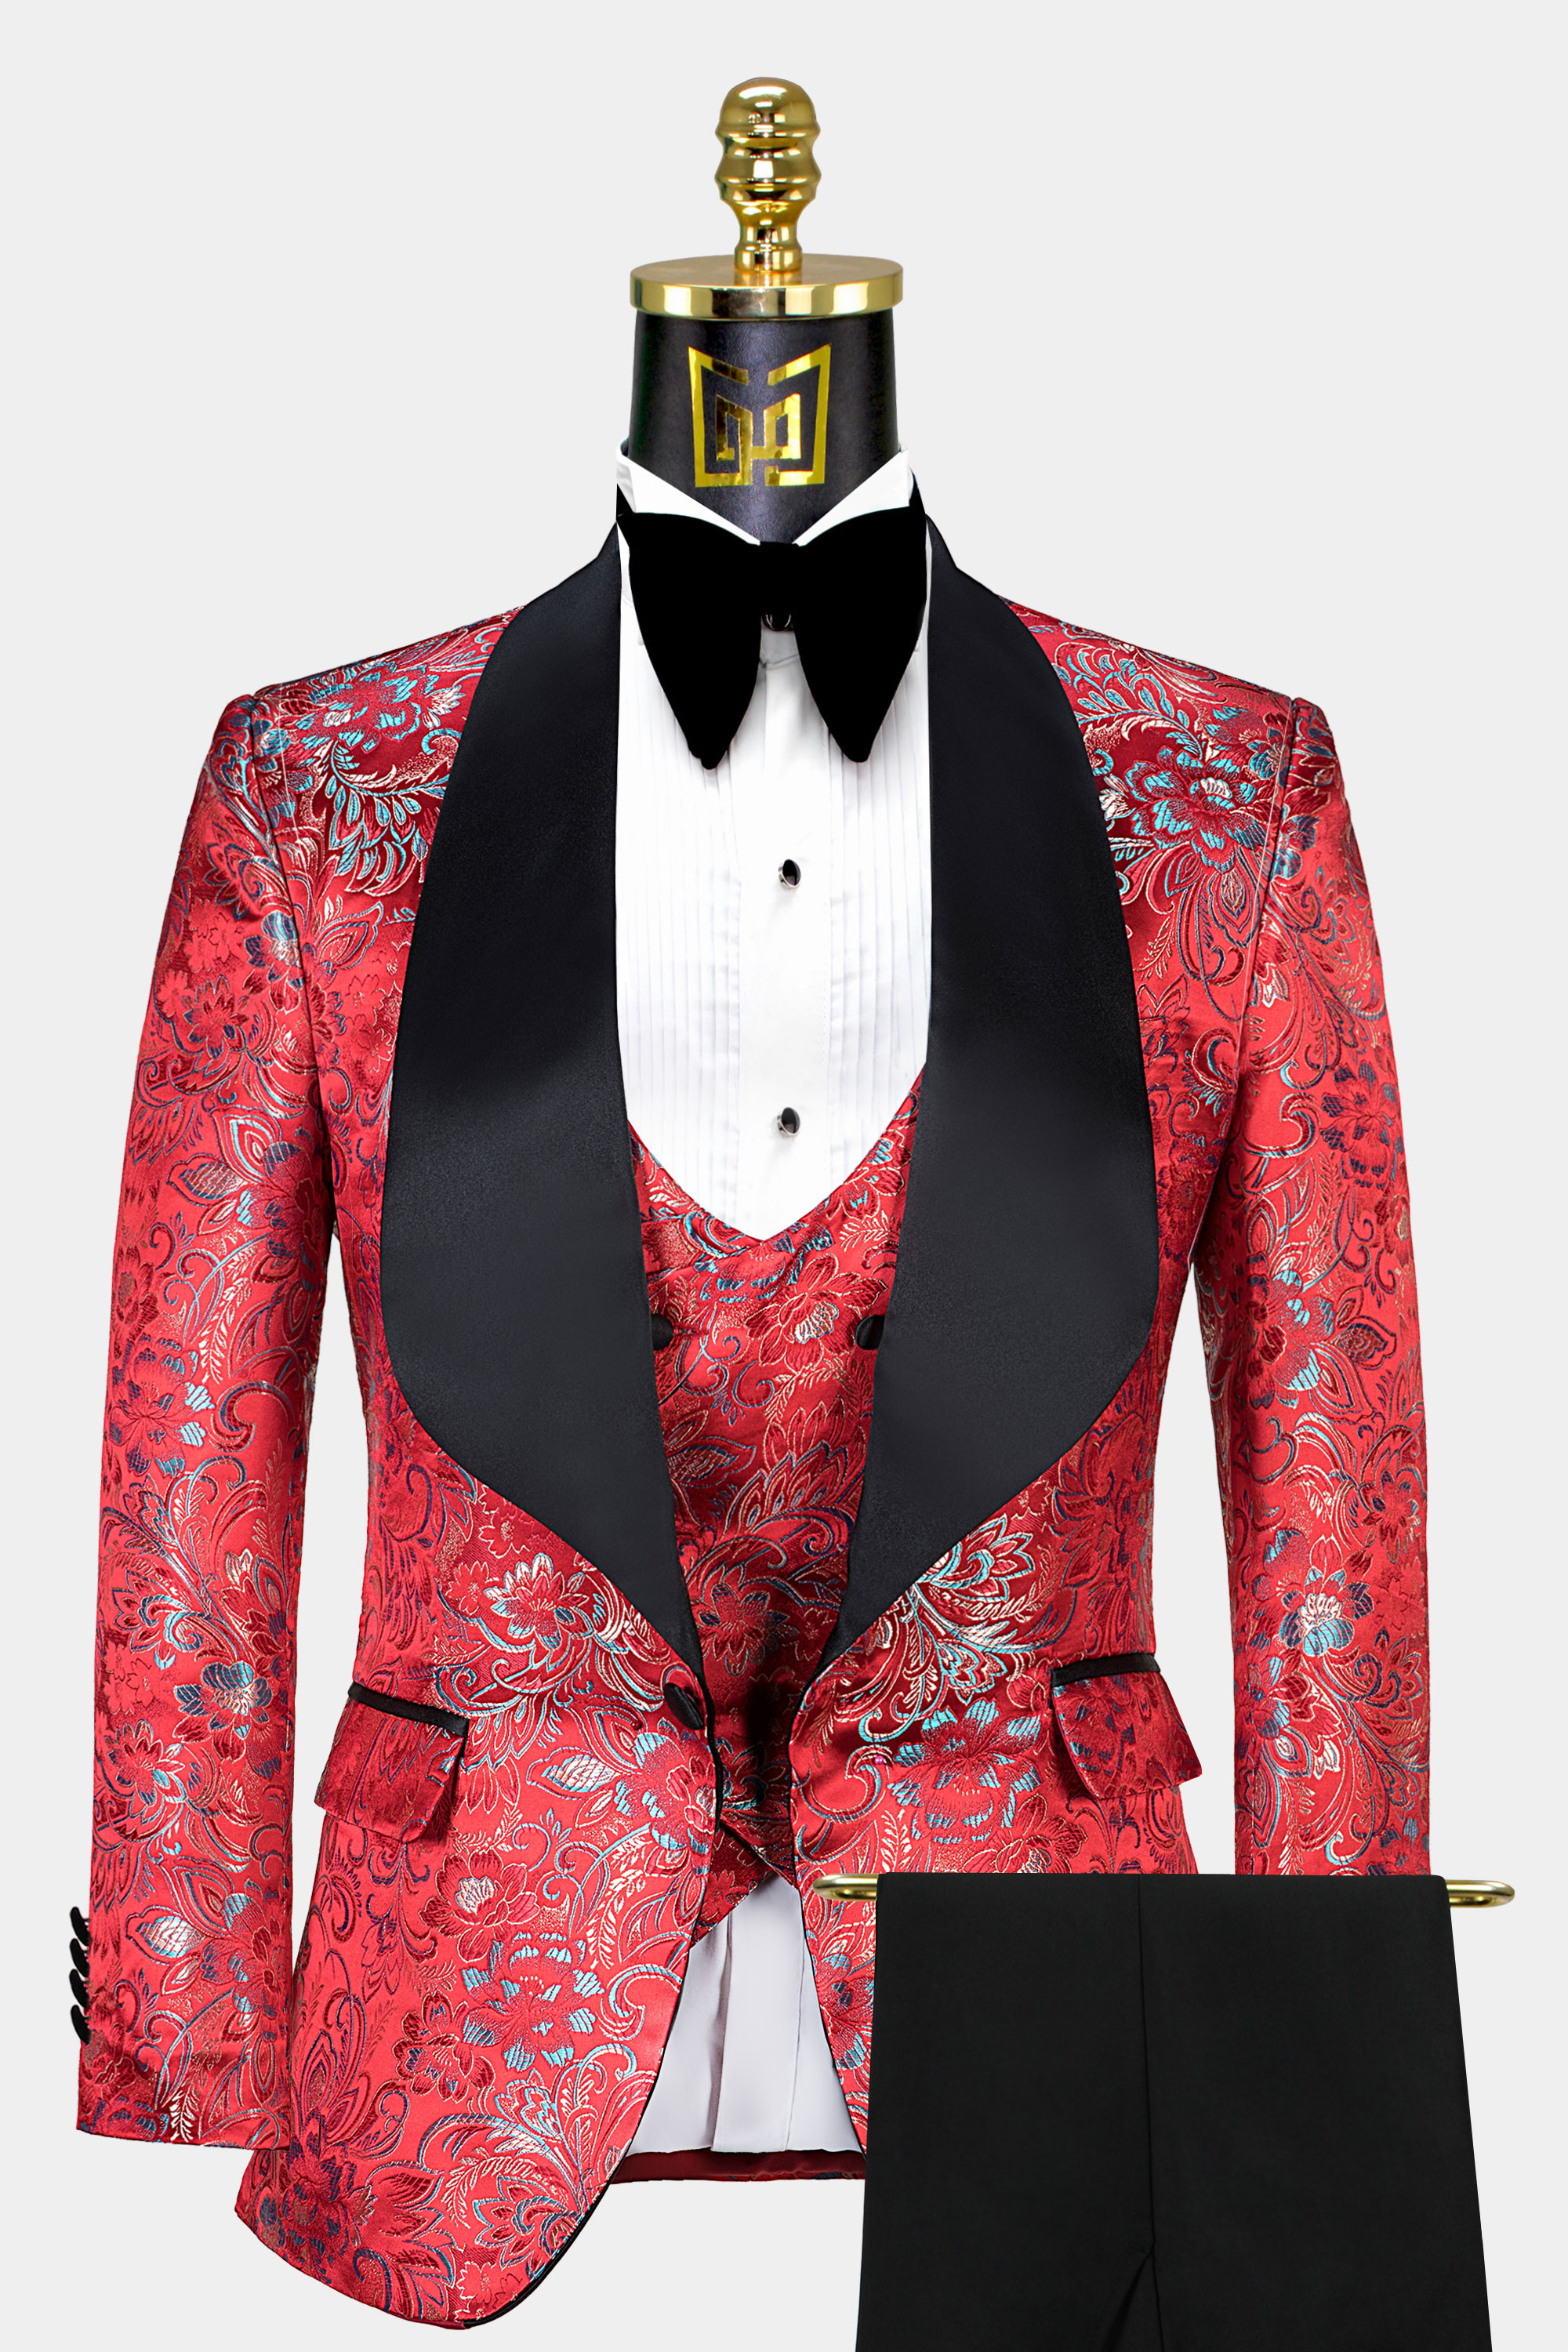 Red-and-Black-Floral-Tuxedo-Wedding-Groom-Suit-from-Gentlemansguru.com